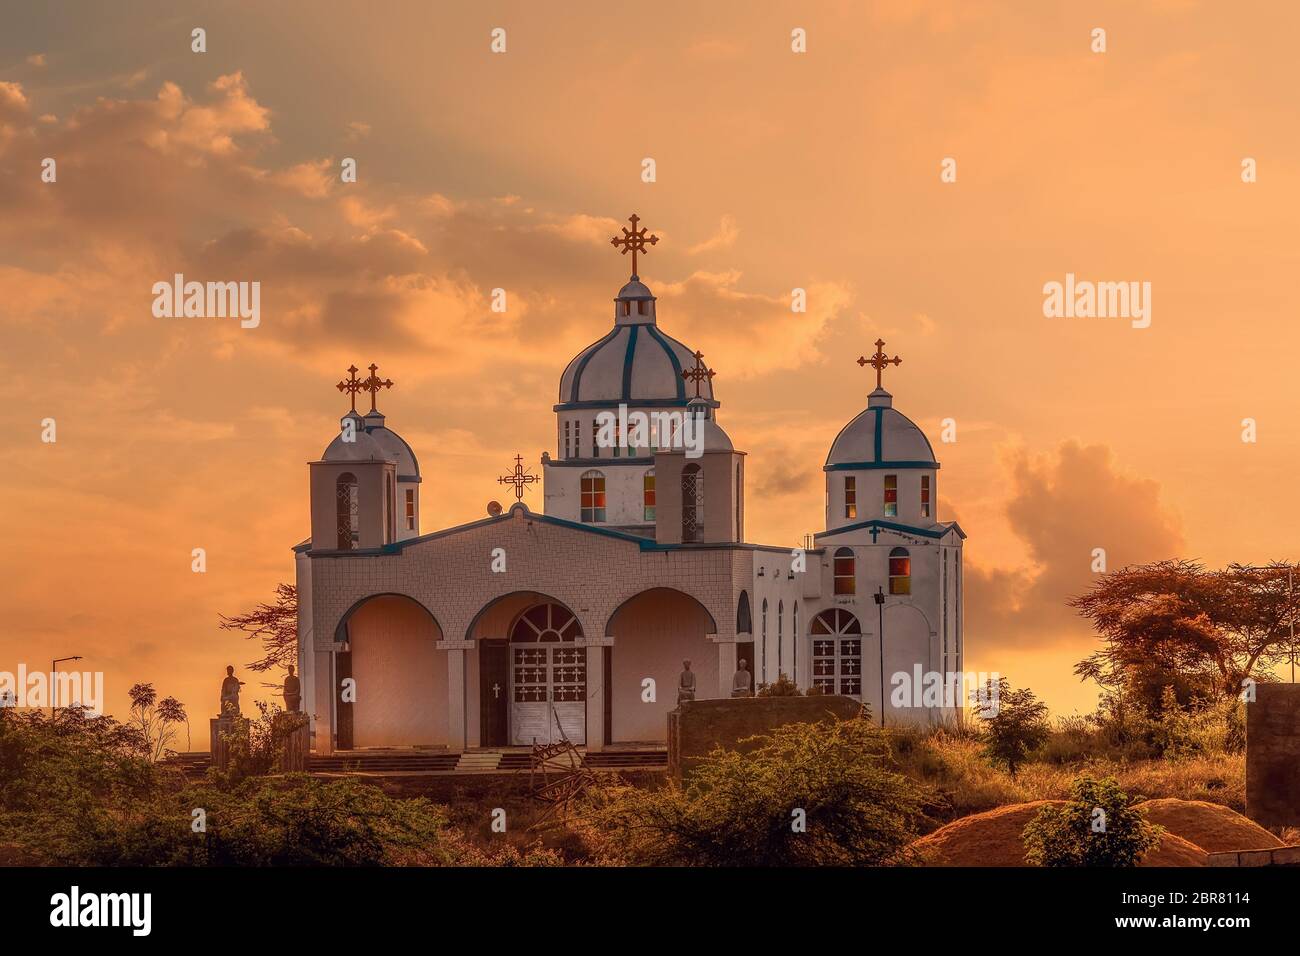 Die schöne Architektur der Christlich-orthodoxen Kirche im Sonnenuntergang, Oromia Region Äthiopien, Afrika Stockfoto